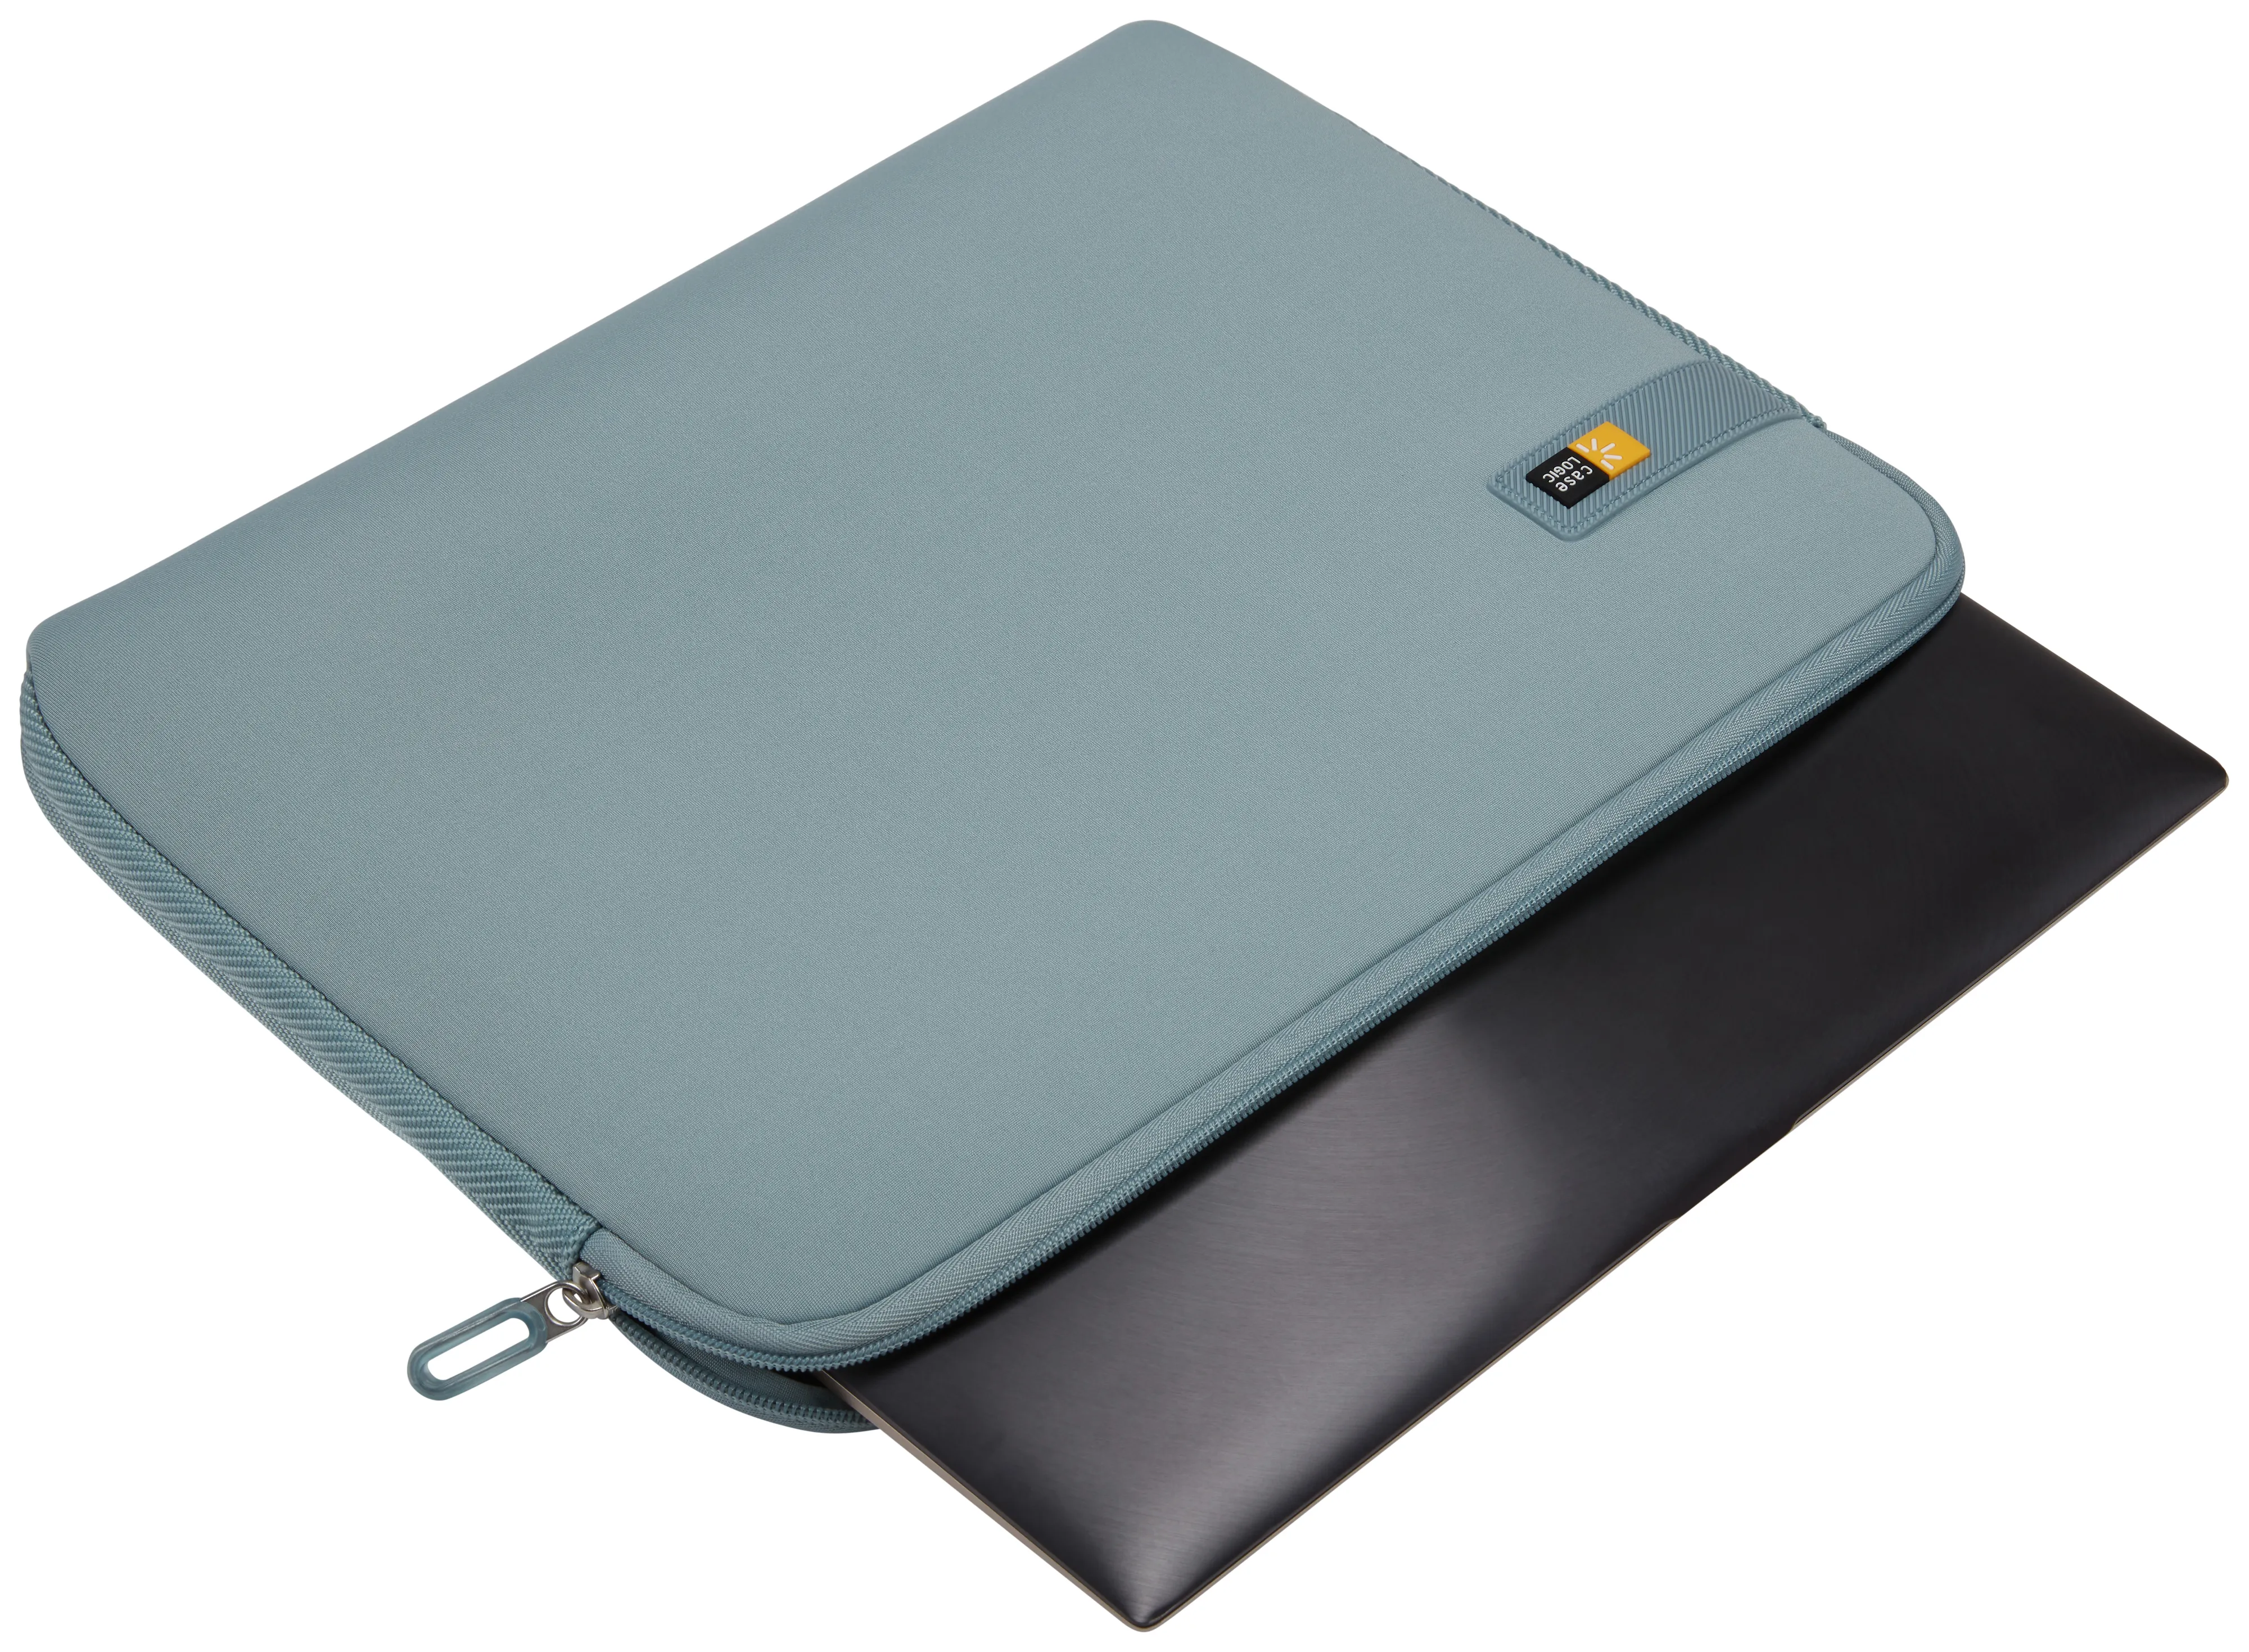 Vente Case Logic Laps LAPS-116 Arona Blue Case Logic au meilleur prix - visuel 8